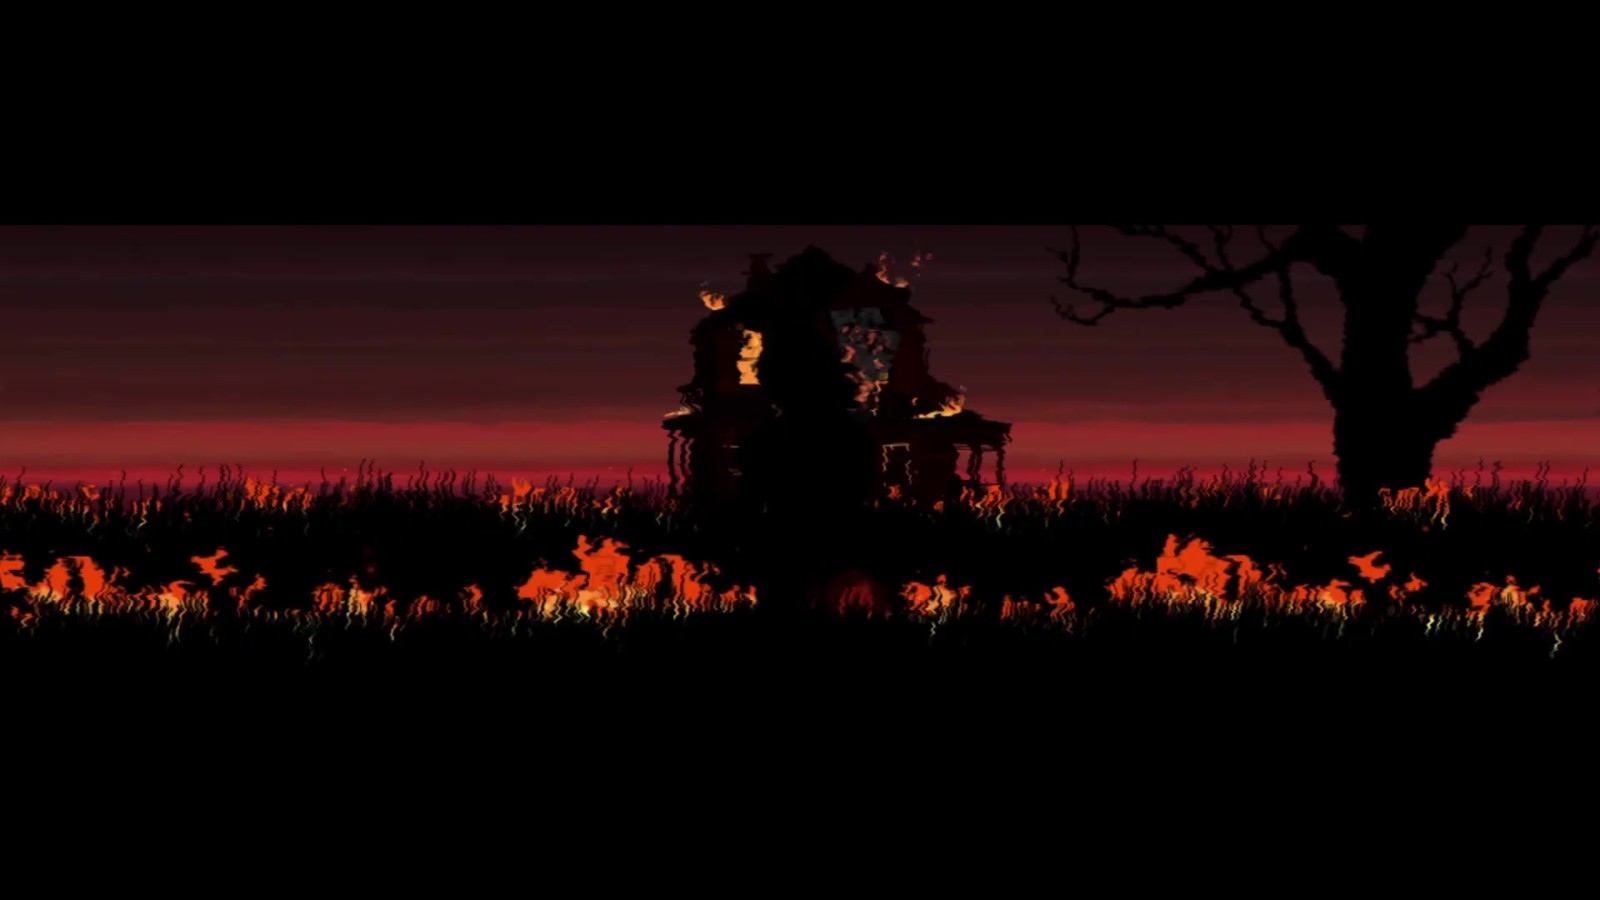 心理惊悚游戏《洛蕾塔》2月16日登陆PC平台 二次世界 第3张